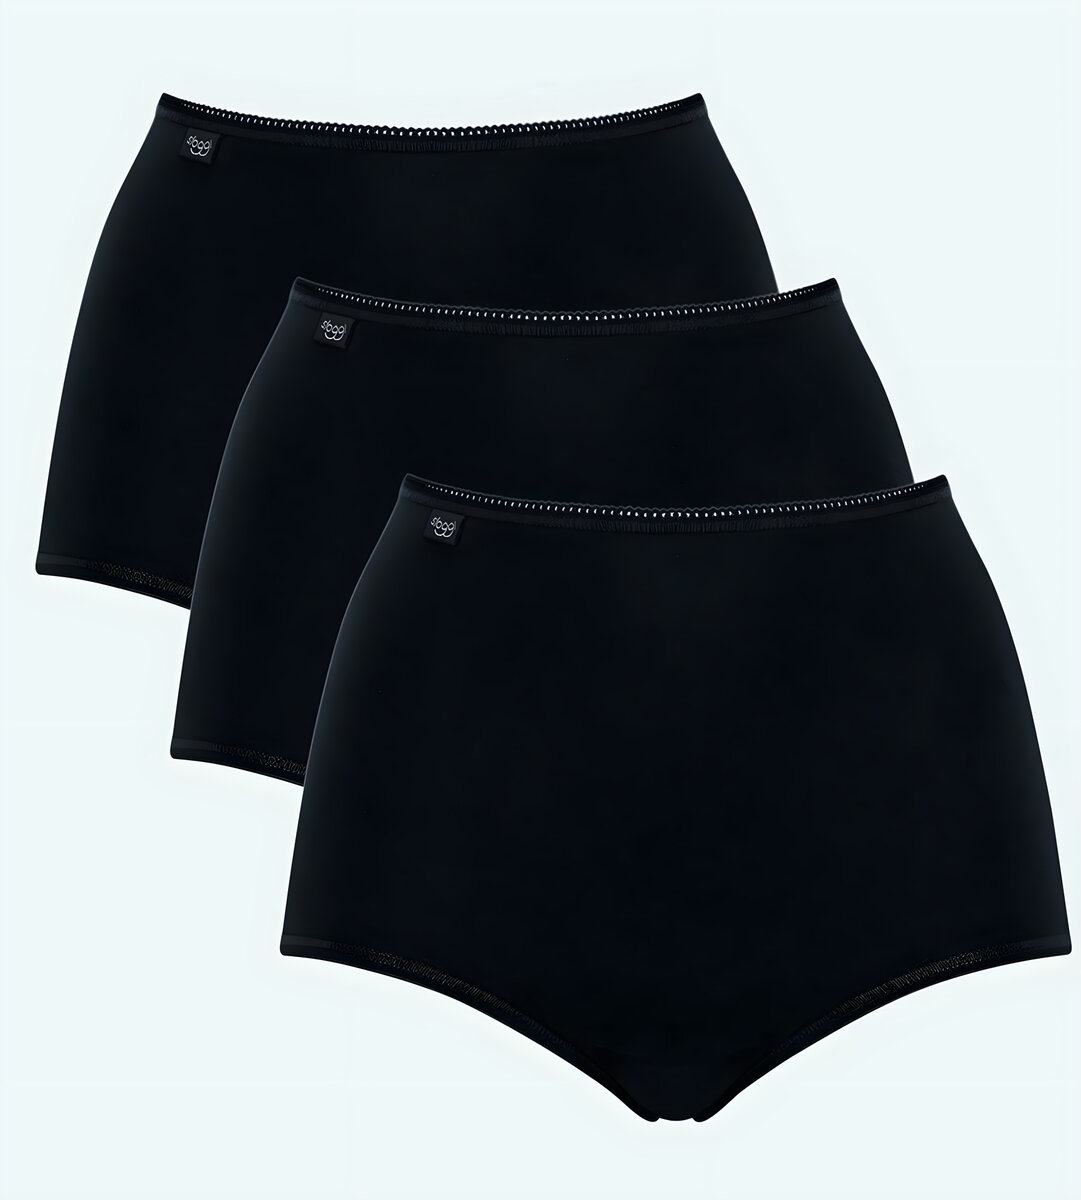 Dámské kalhoty Sloggi 7A1B35 Cotton Maxi C3P černé, BLACK 40 i343_10167190-0004-40